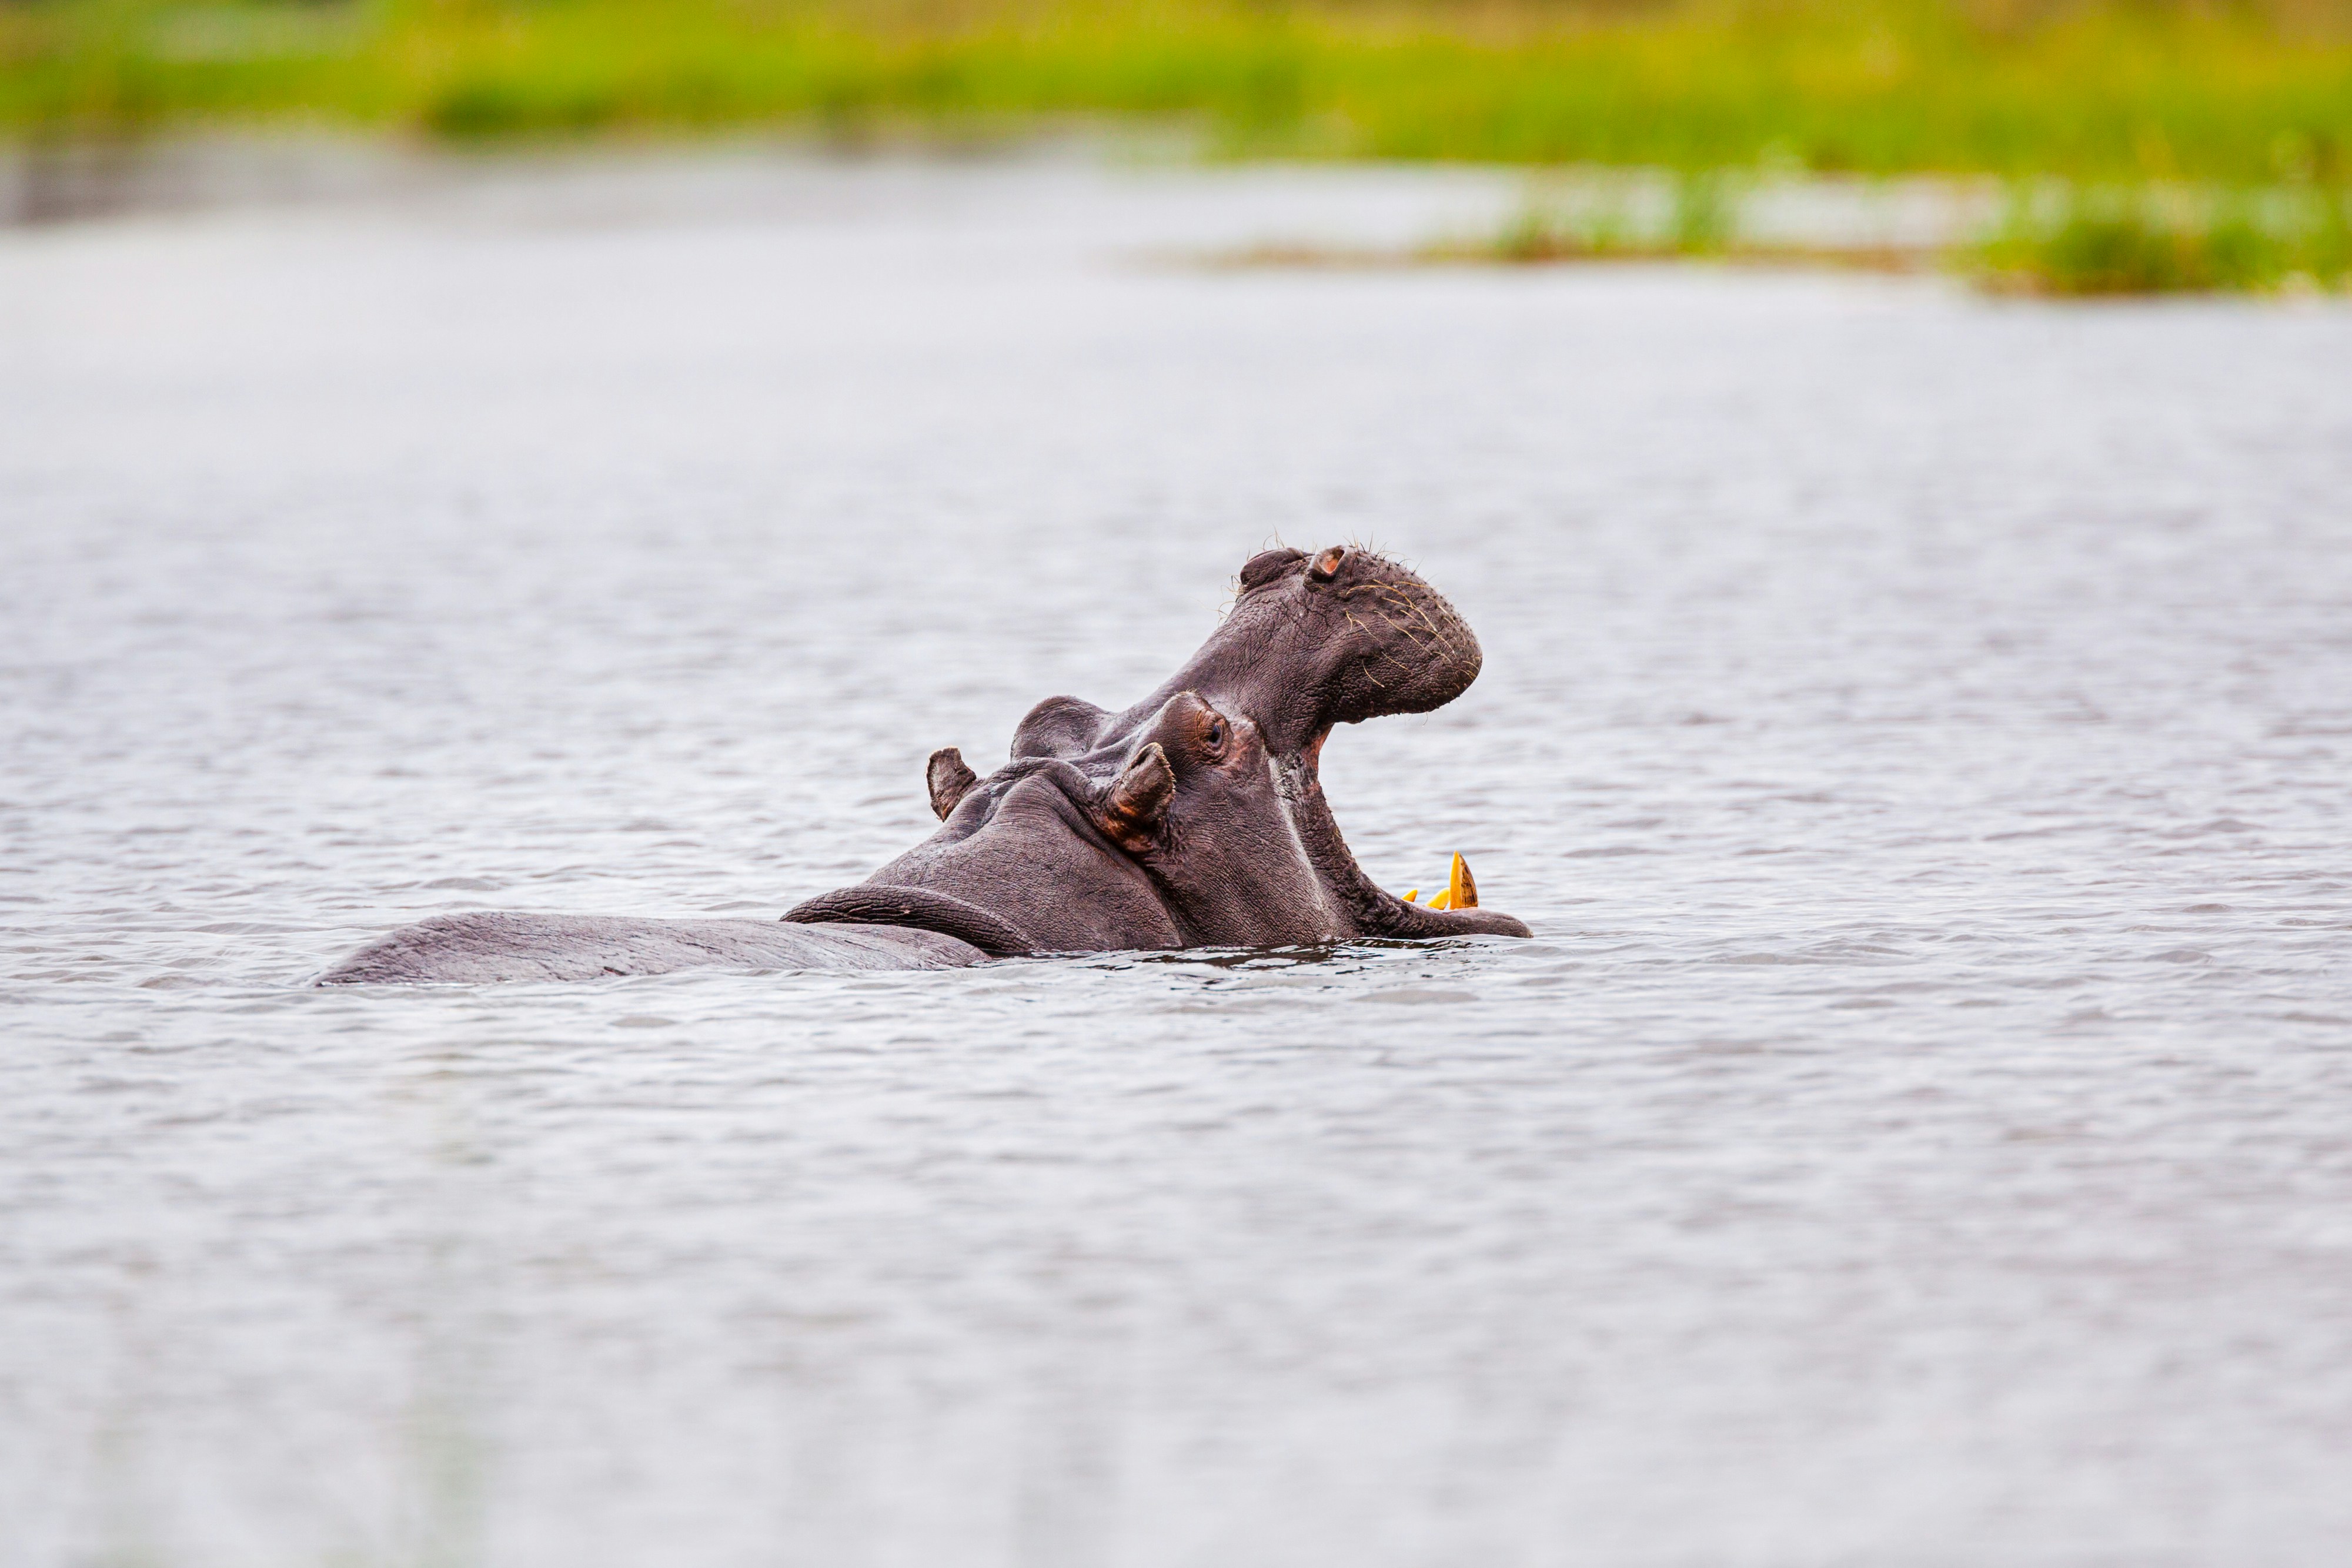 Hippopotamus showing territorial behaviour